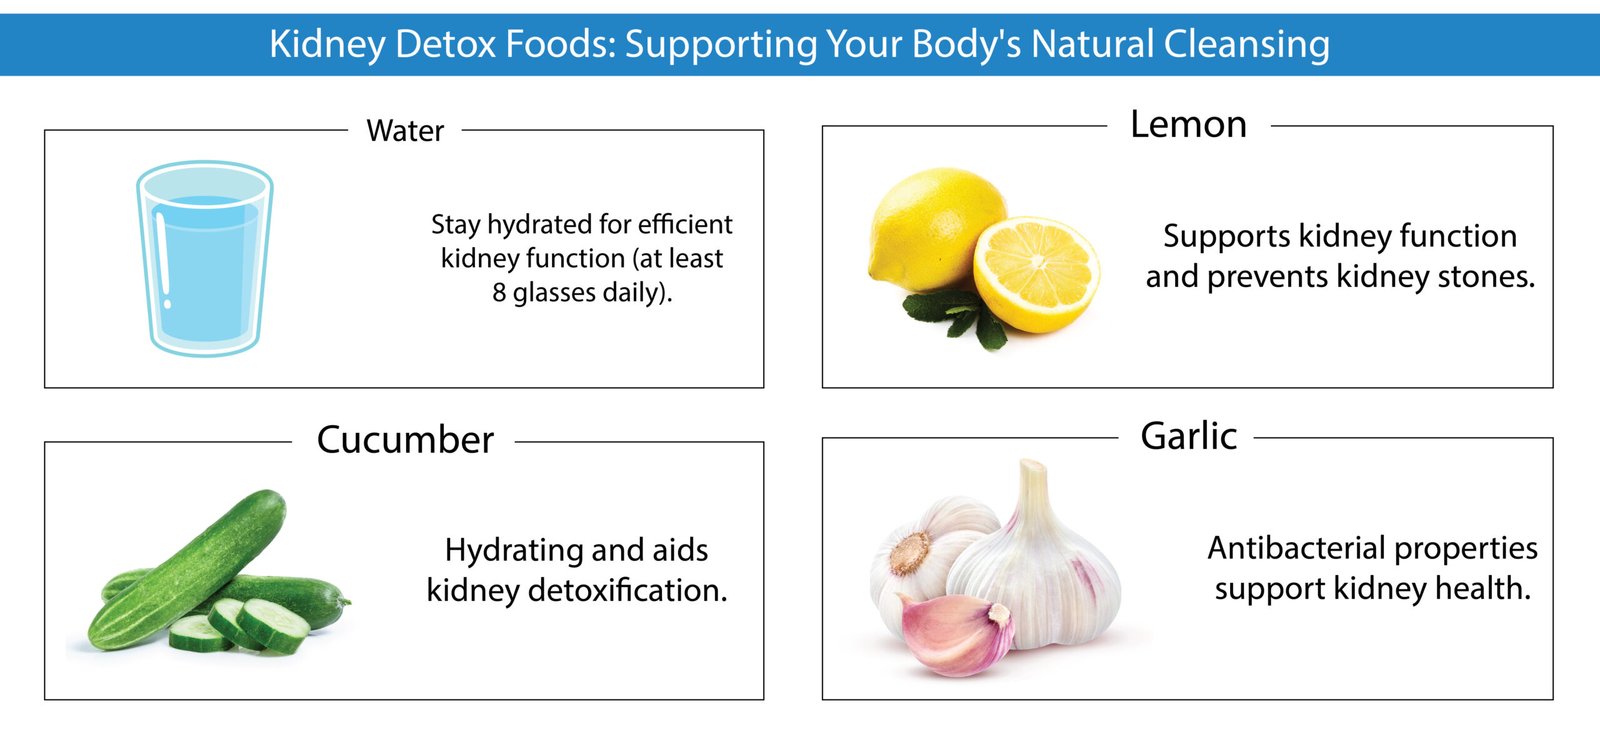 Top Kidney Detox Foods